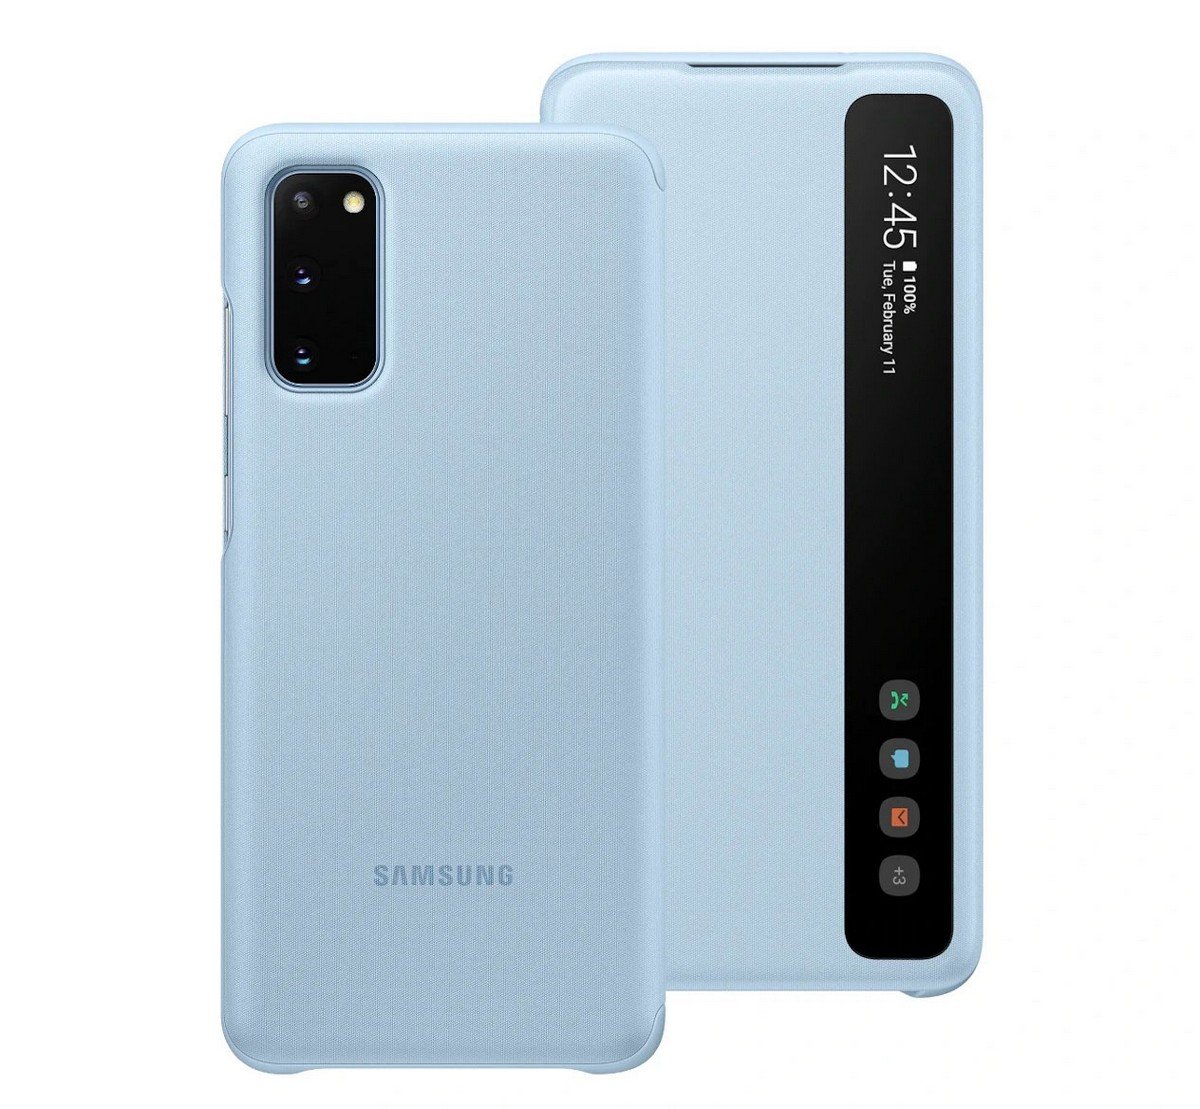 Etui Samsung Clear View Cover Sky Blue do Galaxy S20 EF-ZG980CLEGEU. Lżejszy i wygodniejszy.